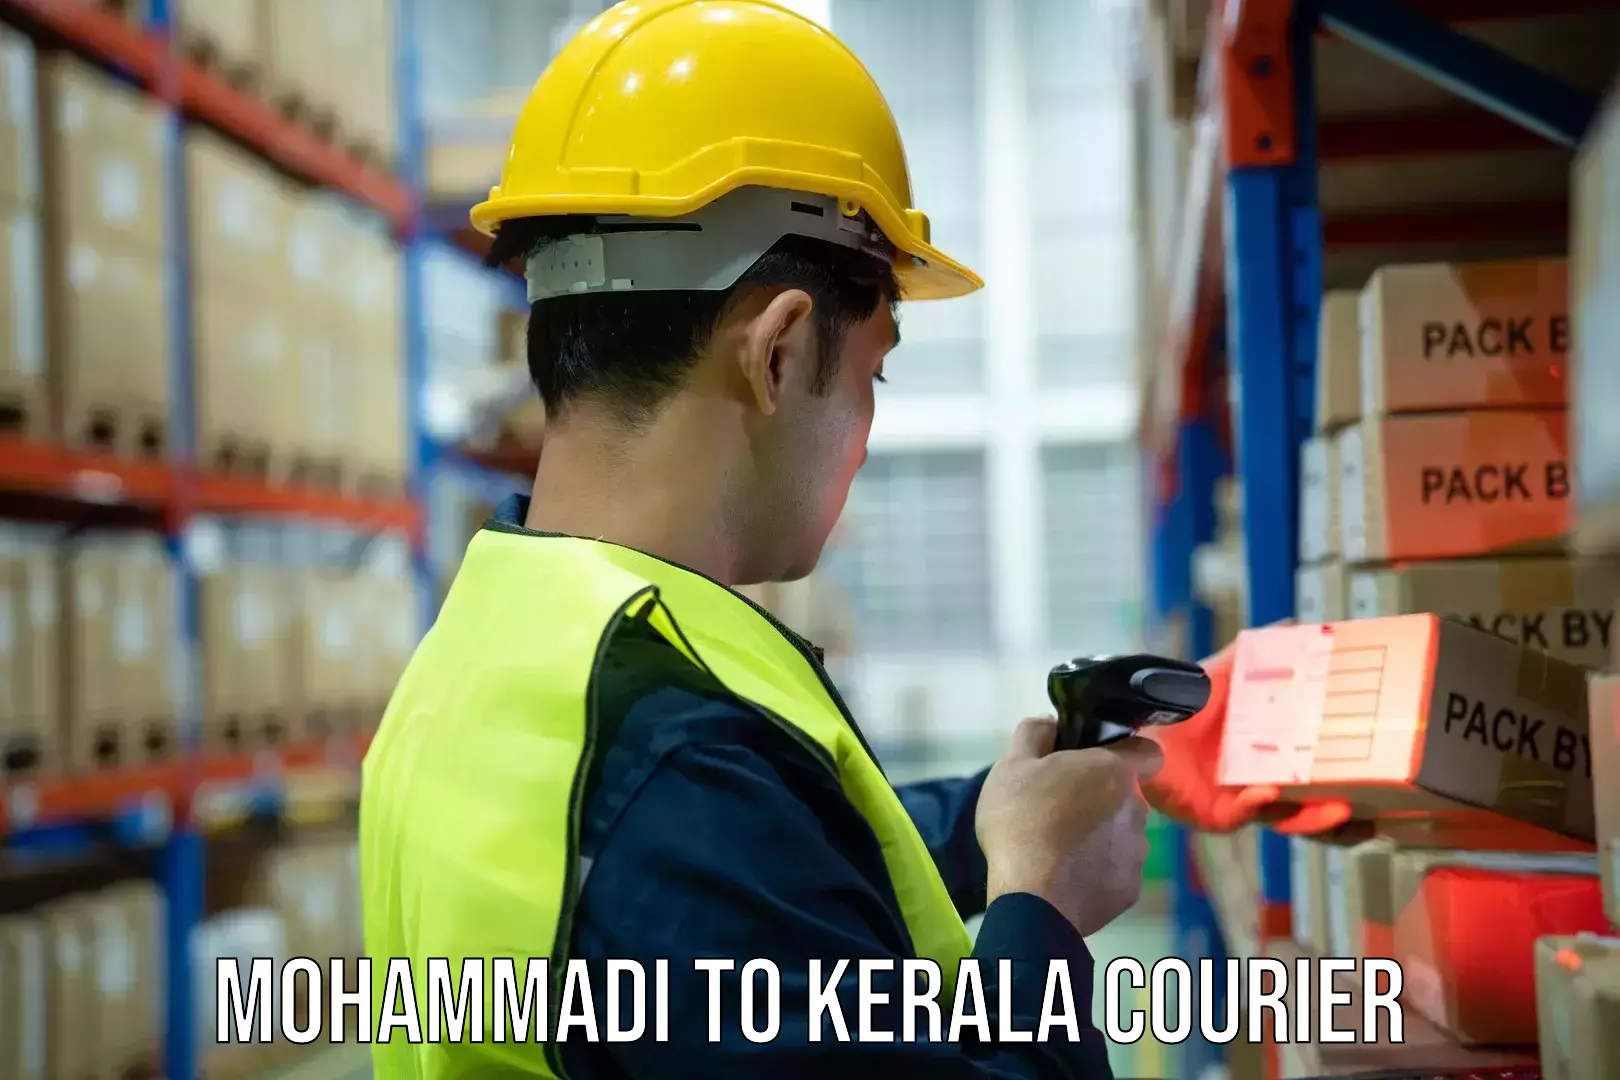 Digital courier platforms Mohammadi to Kerala